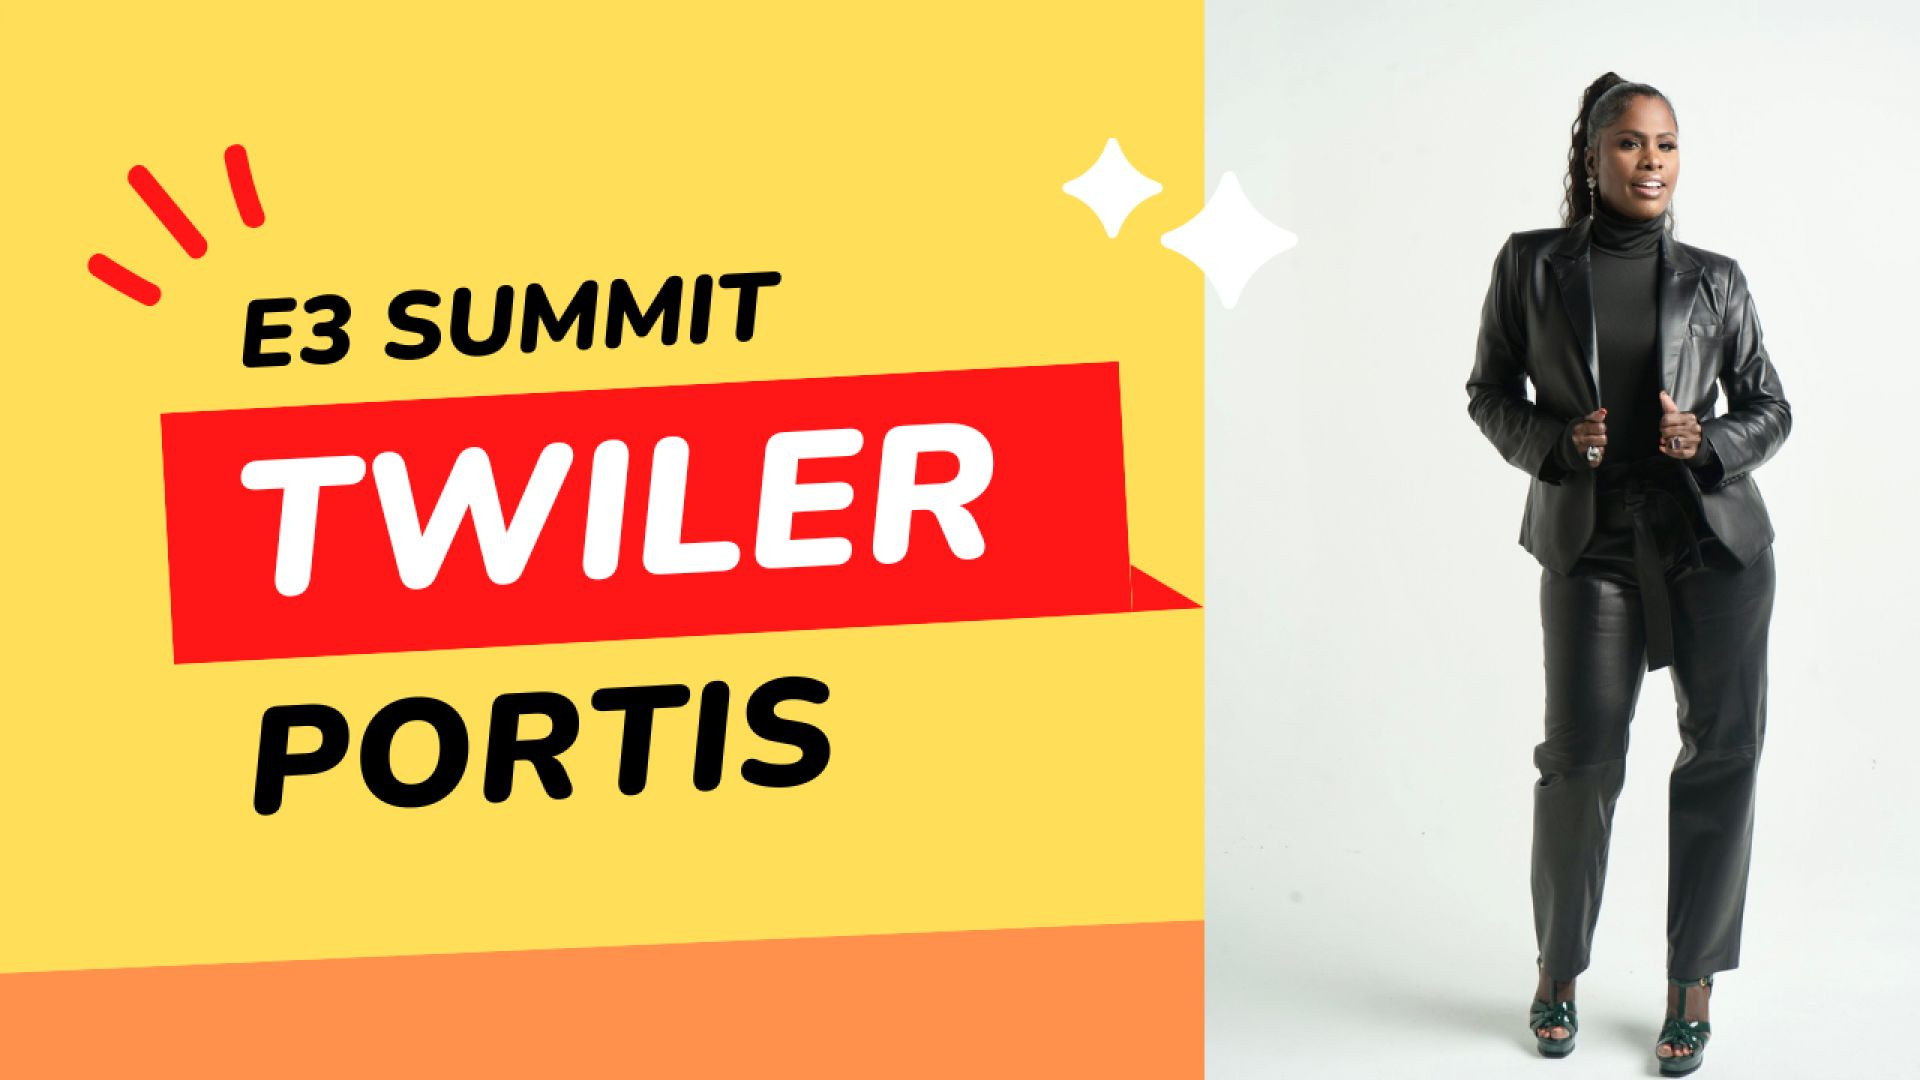 Twiler Portis E3 Summit